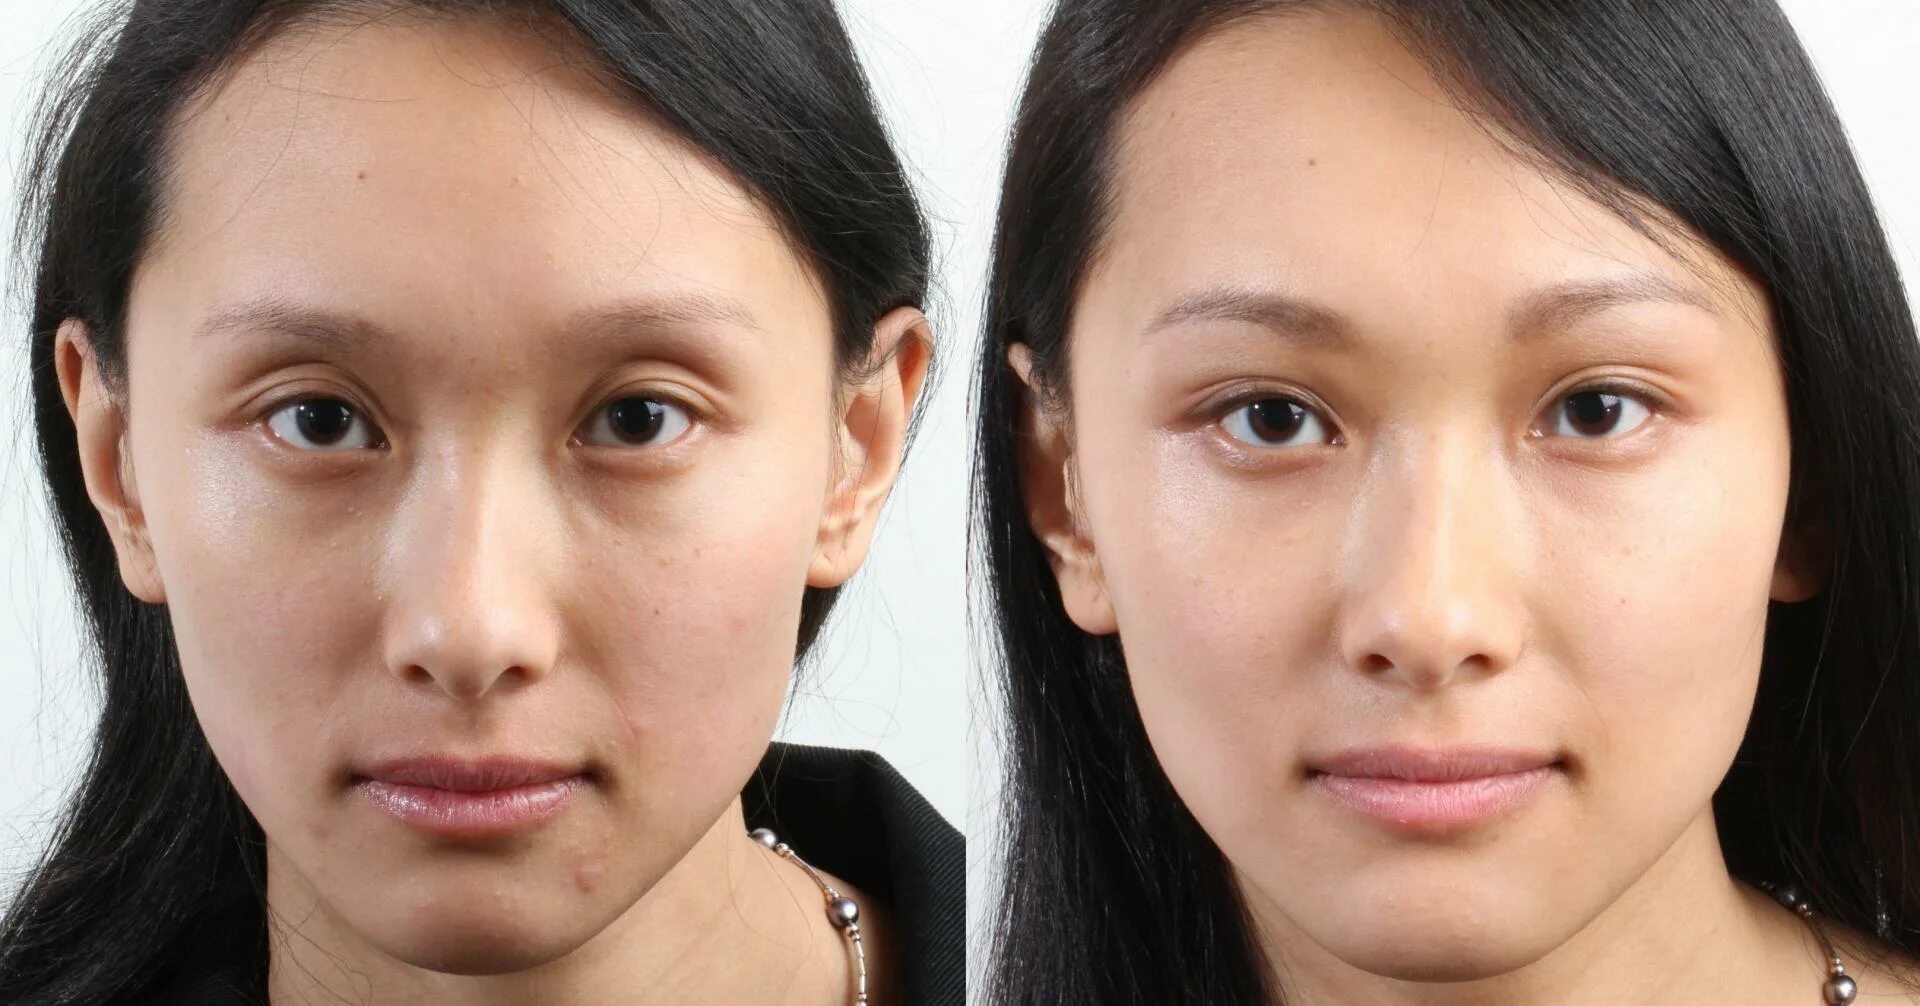 Филлеры под глаза до и после. Европейцы с эпикантусом. Морщины до после азиатки.